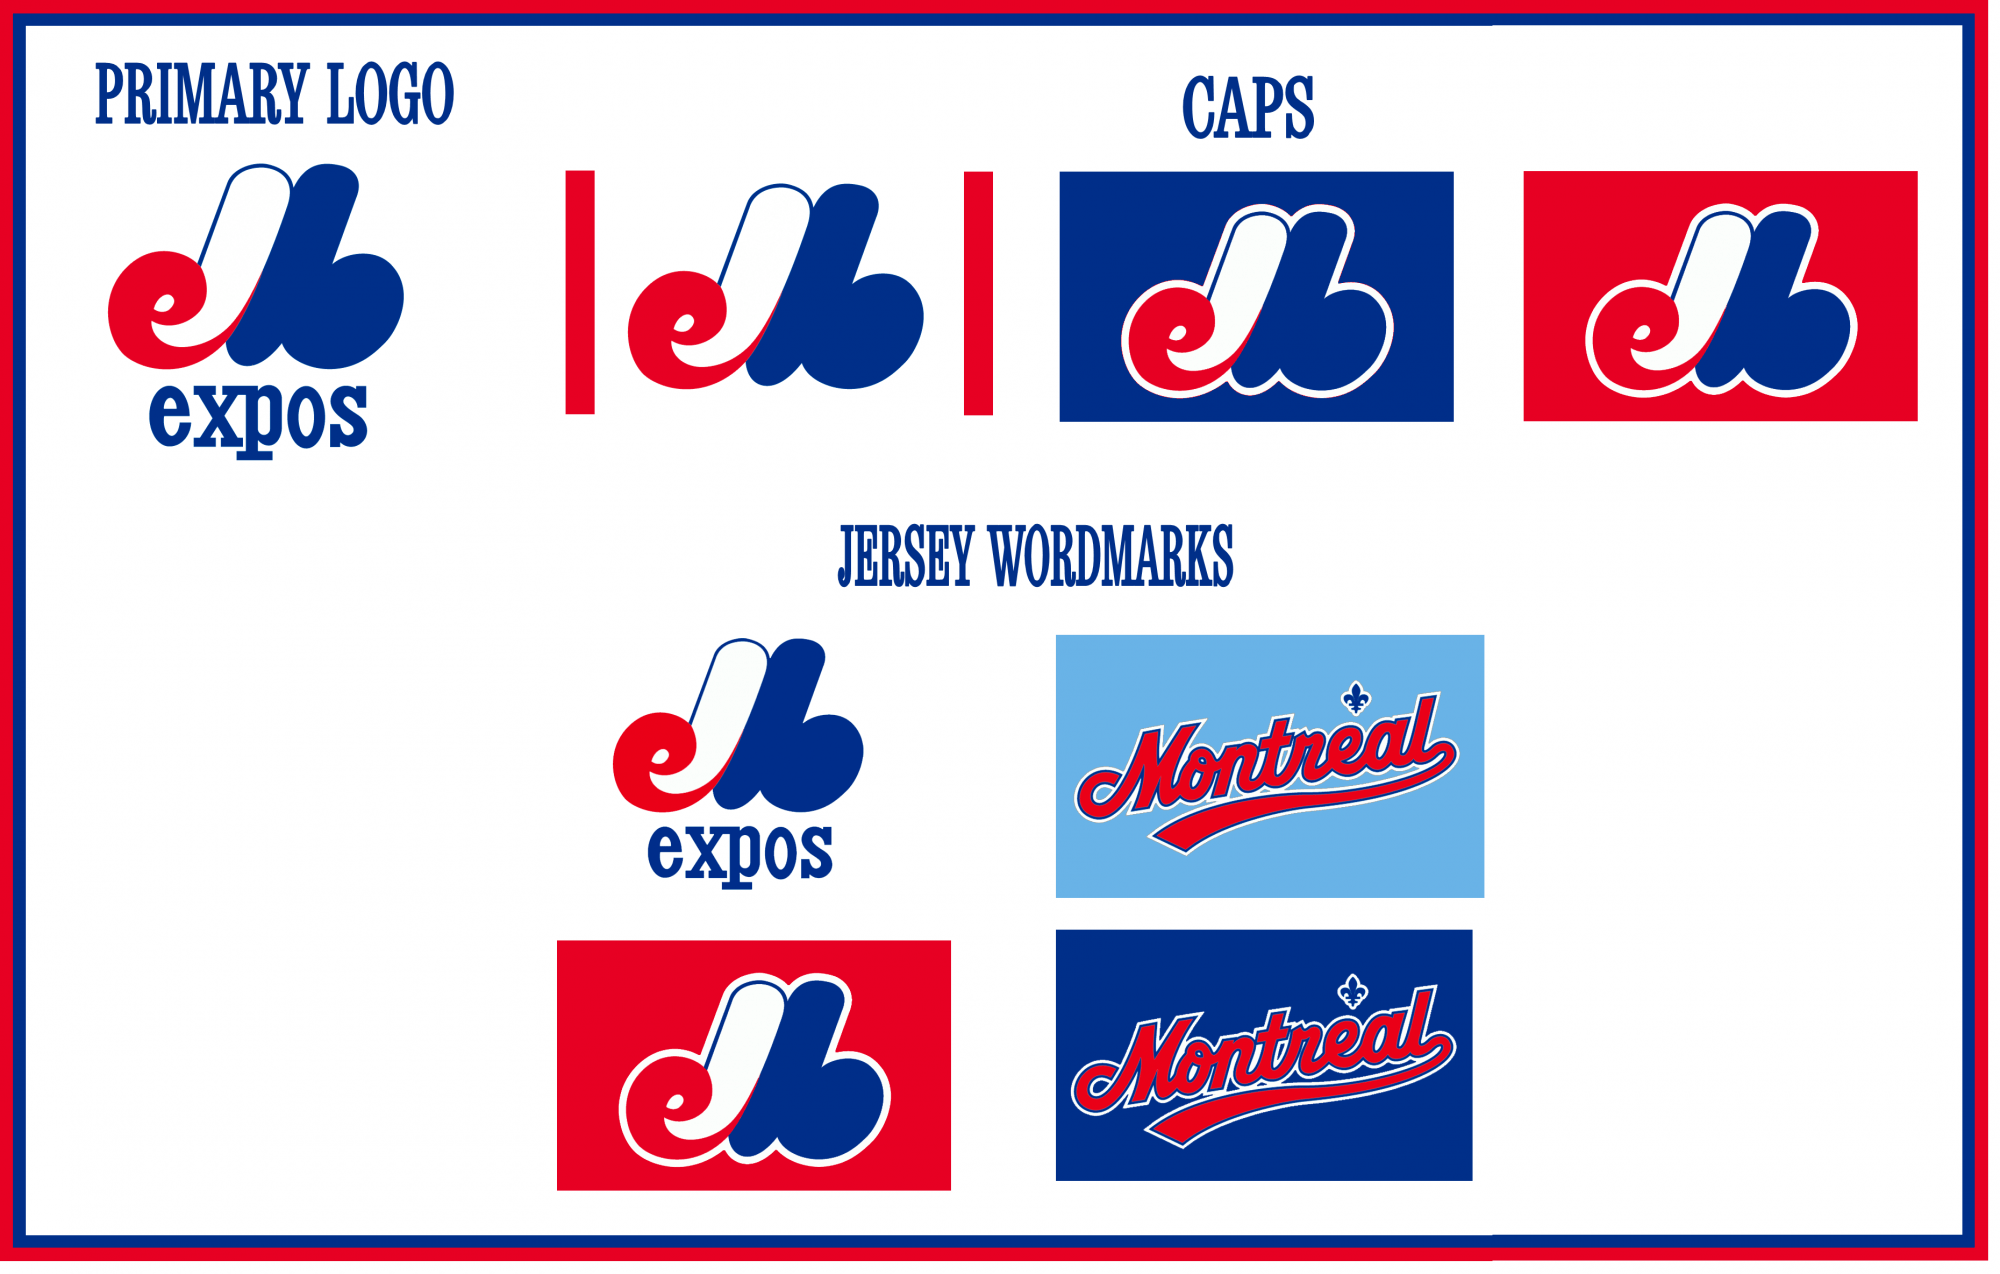 Montreal Expos Logos - National League (NL) - Chris Creamer's